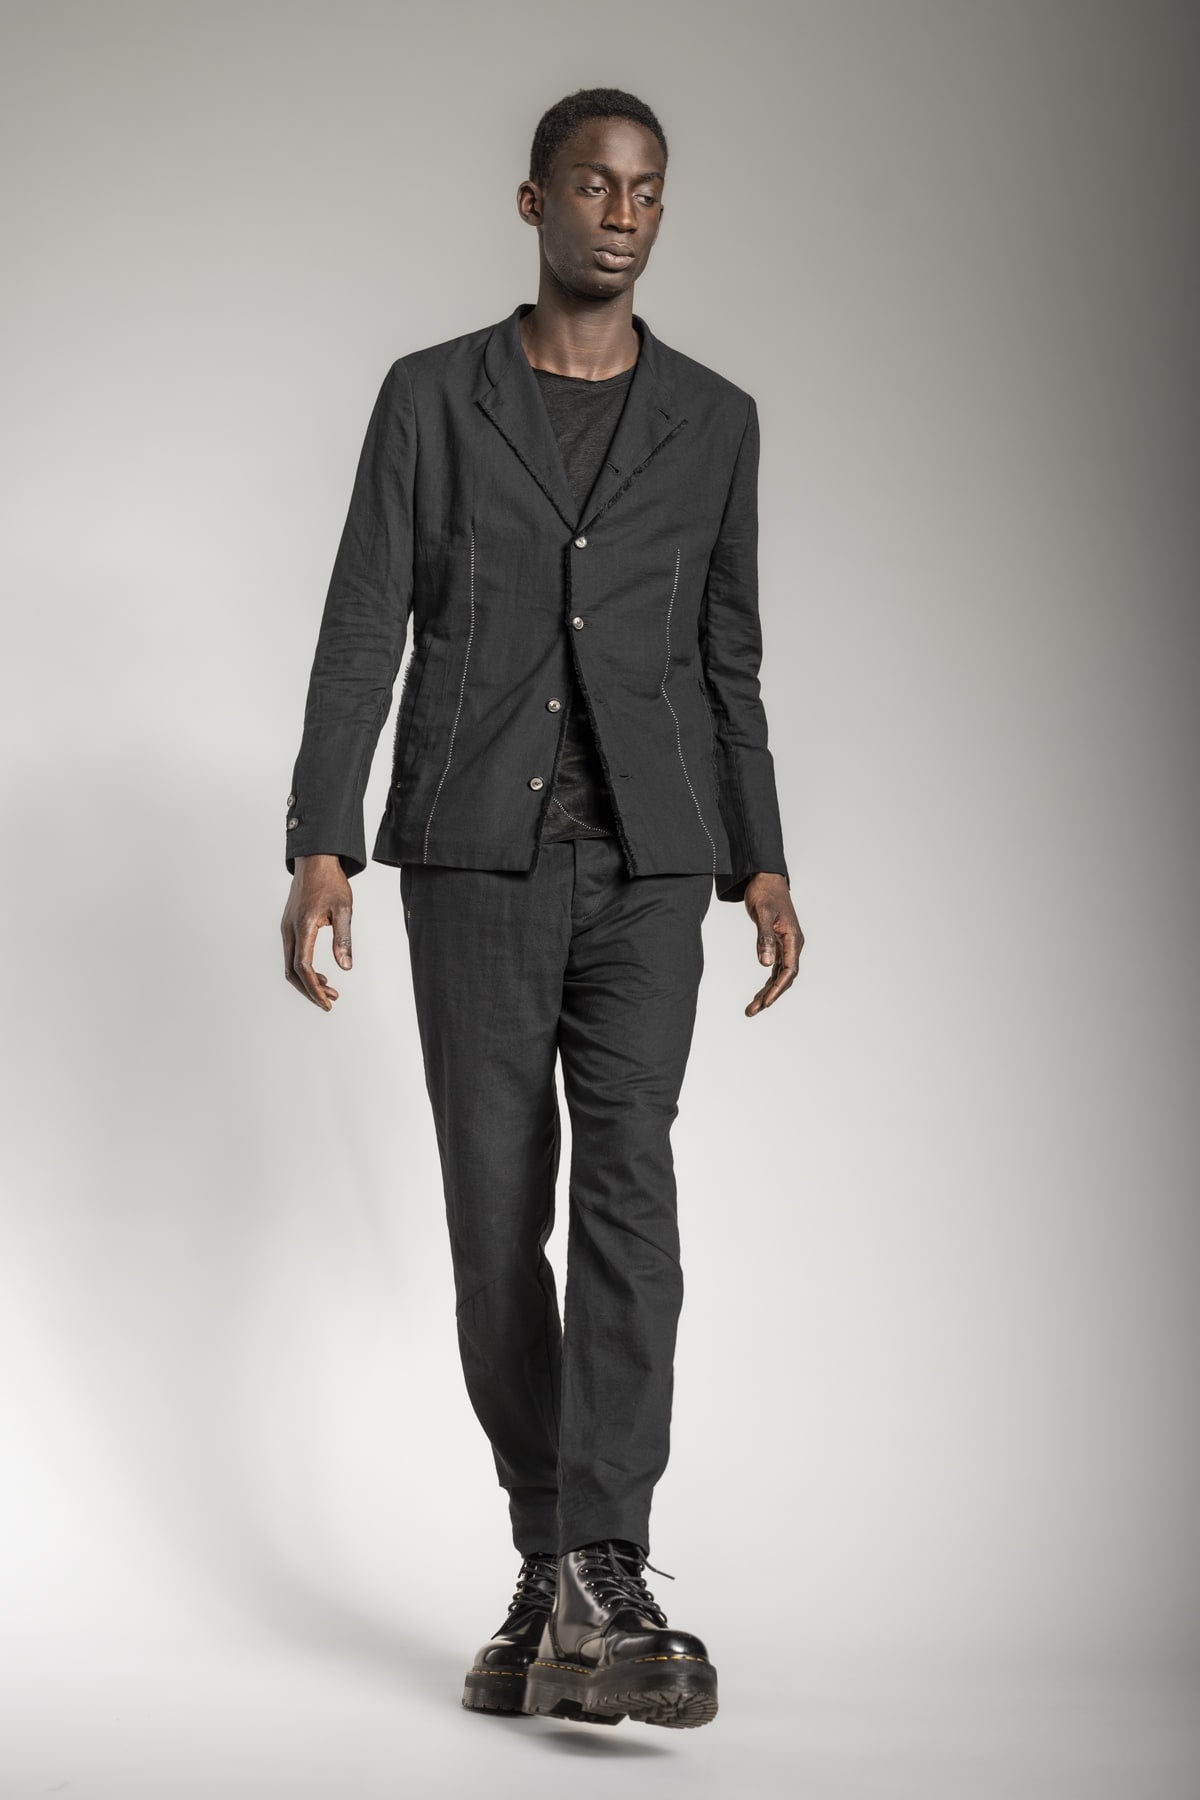 All Black Outfits für Herren und schwarze Designermode im Online Shop von eigensinnig wien kaufen